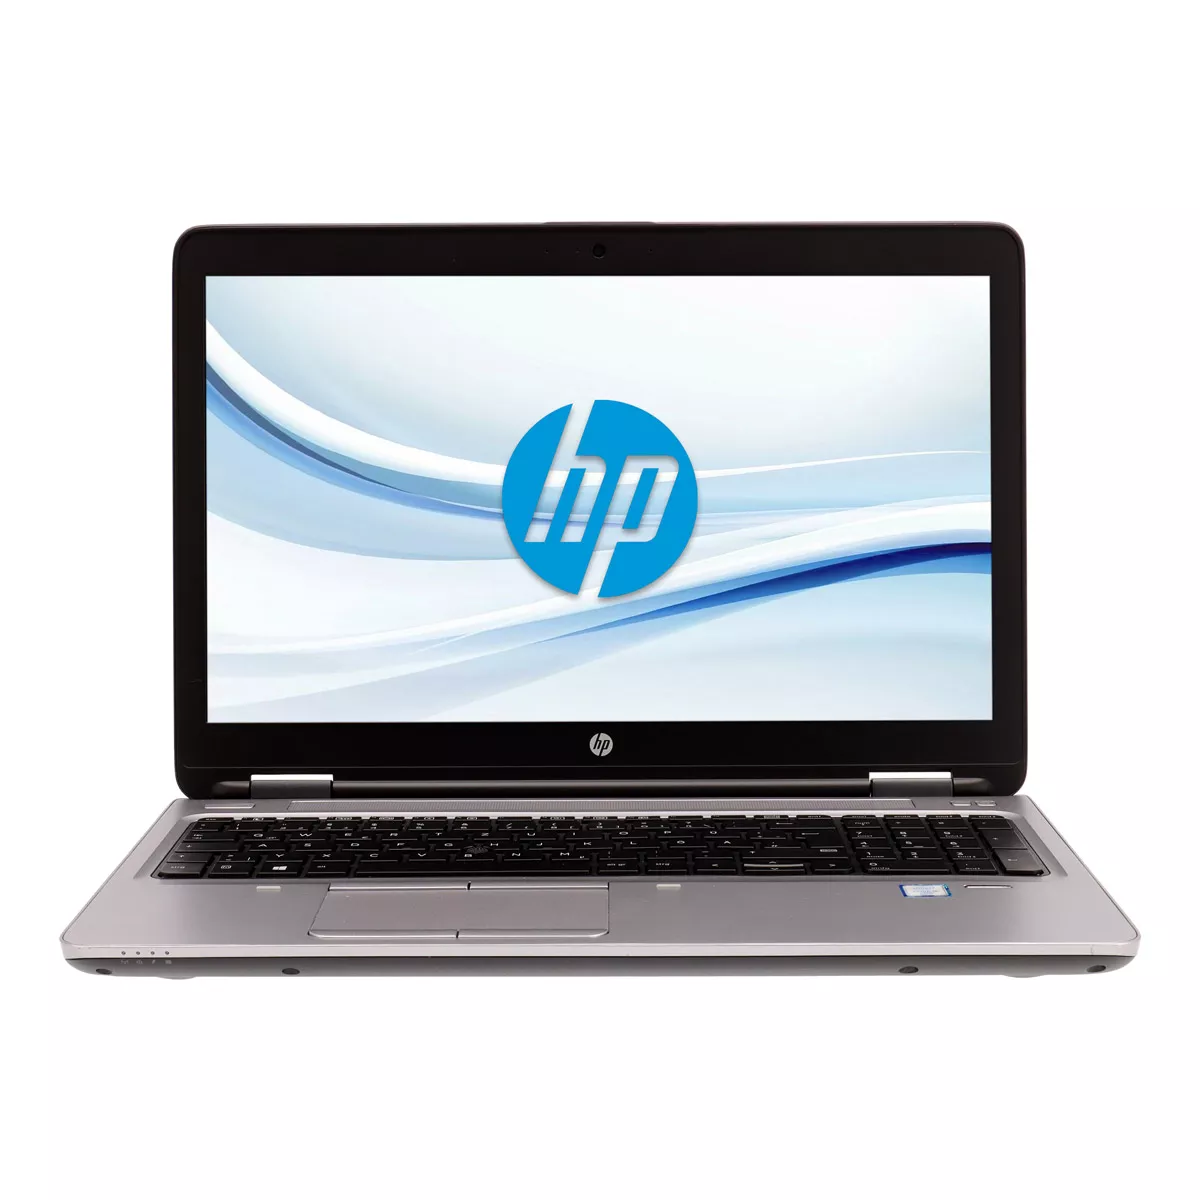 HP ProBook 650 G2 Core i3 6100U 500 GB HDD Webcam A